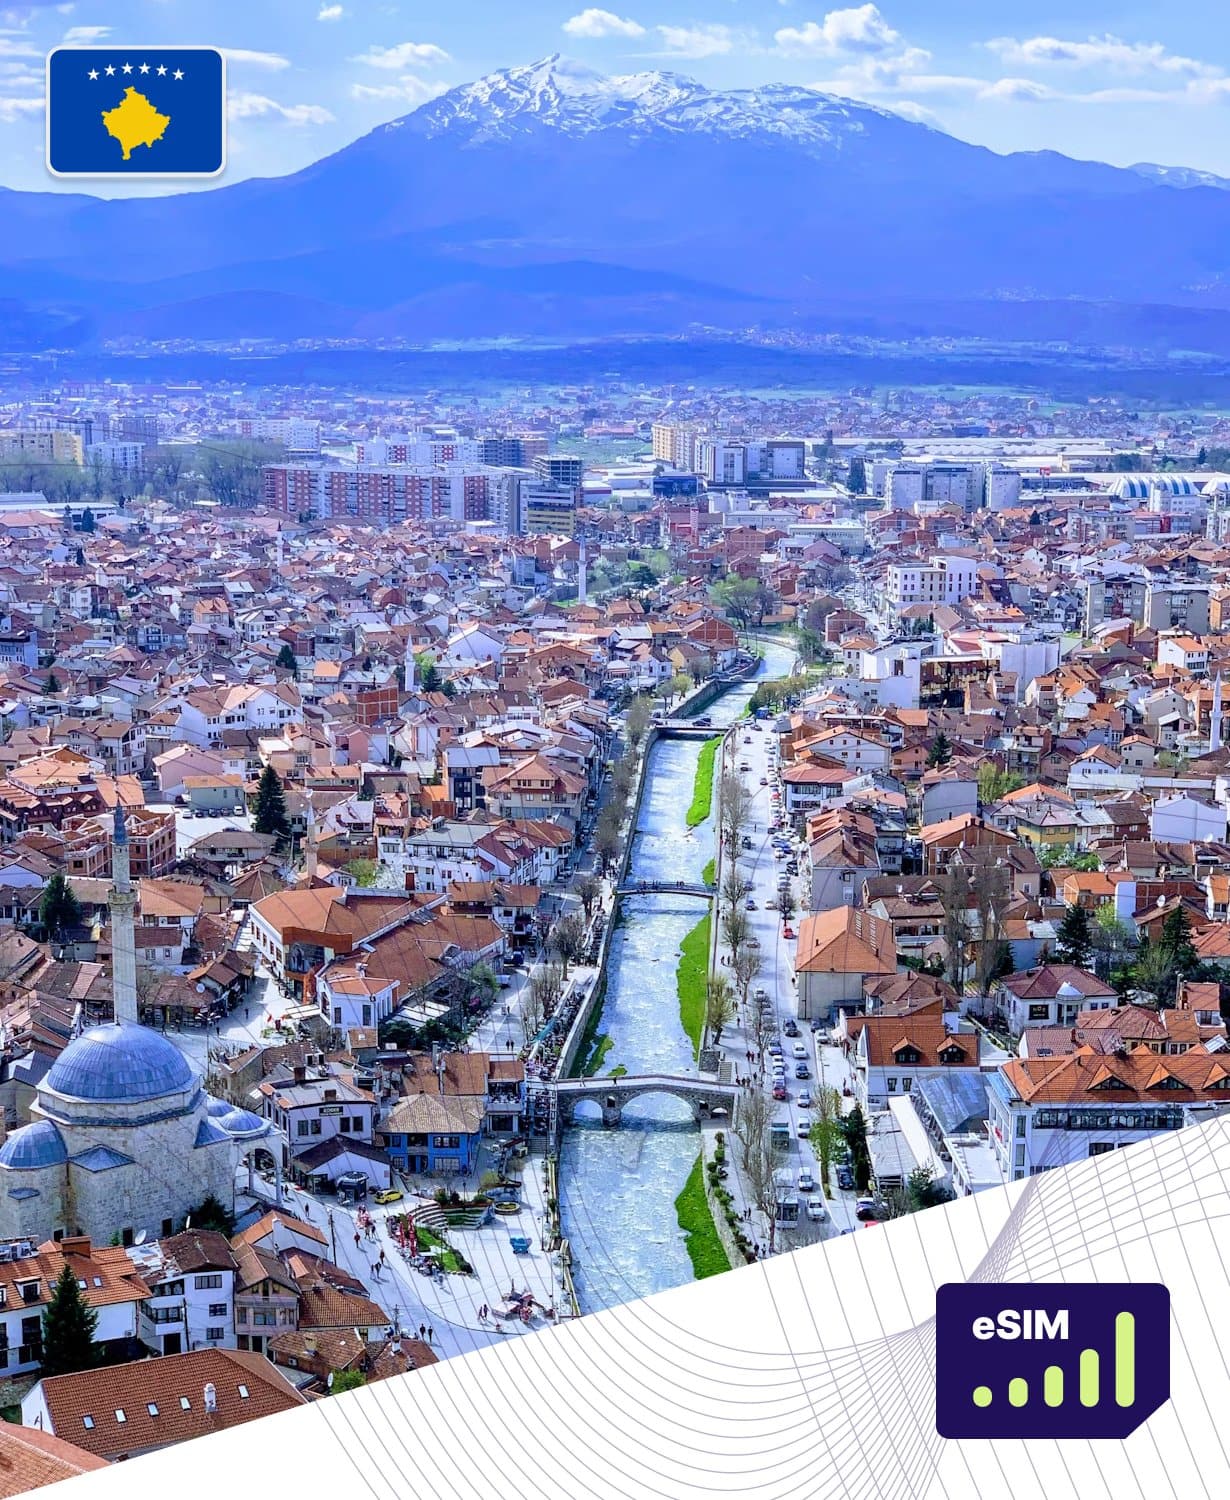 Kosovo eSIM Plans - Roamight